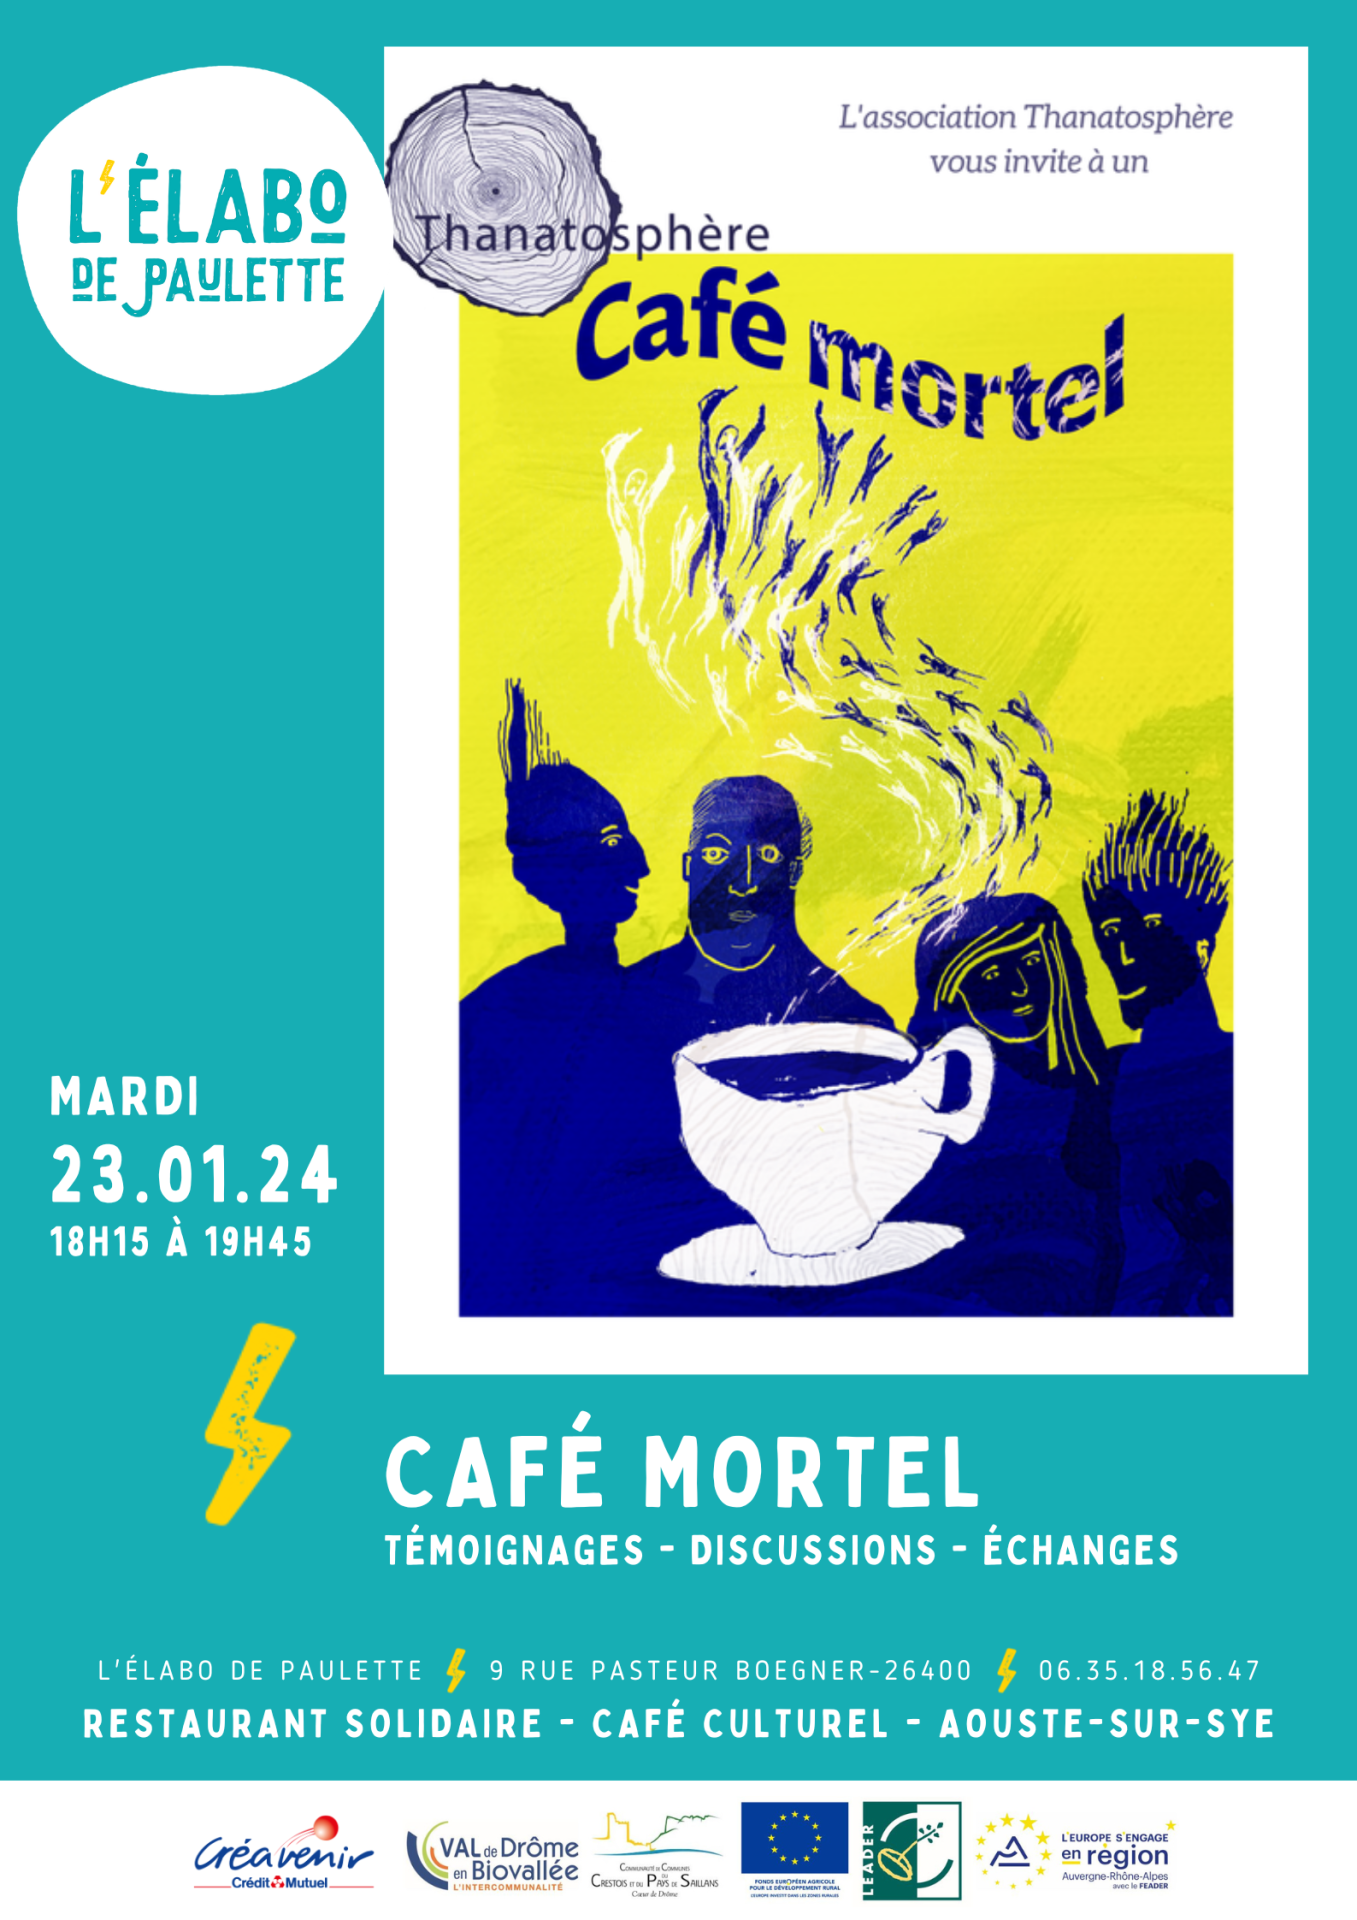 Cafe mortel 1